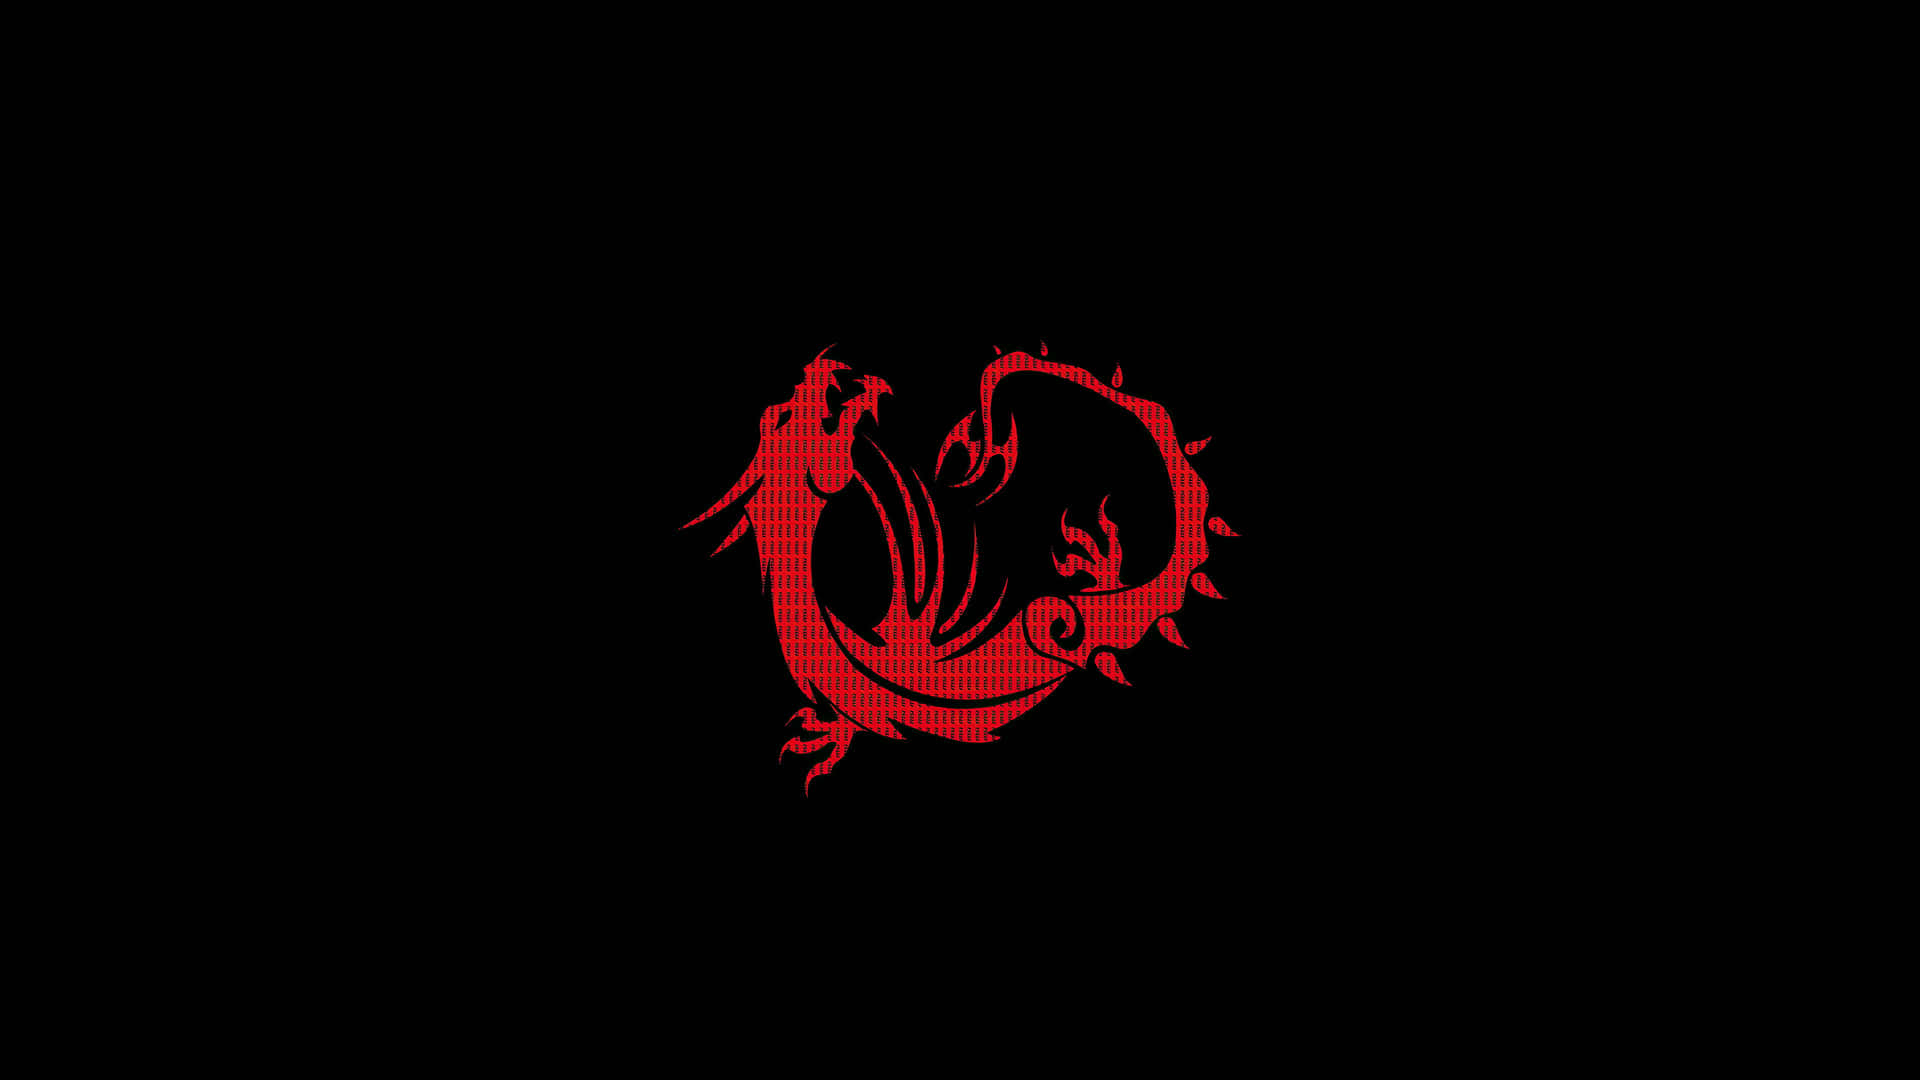 Red Gaming Dragon Logo Wallpaper